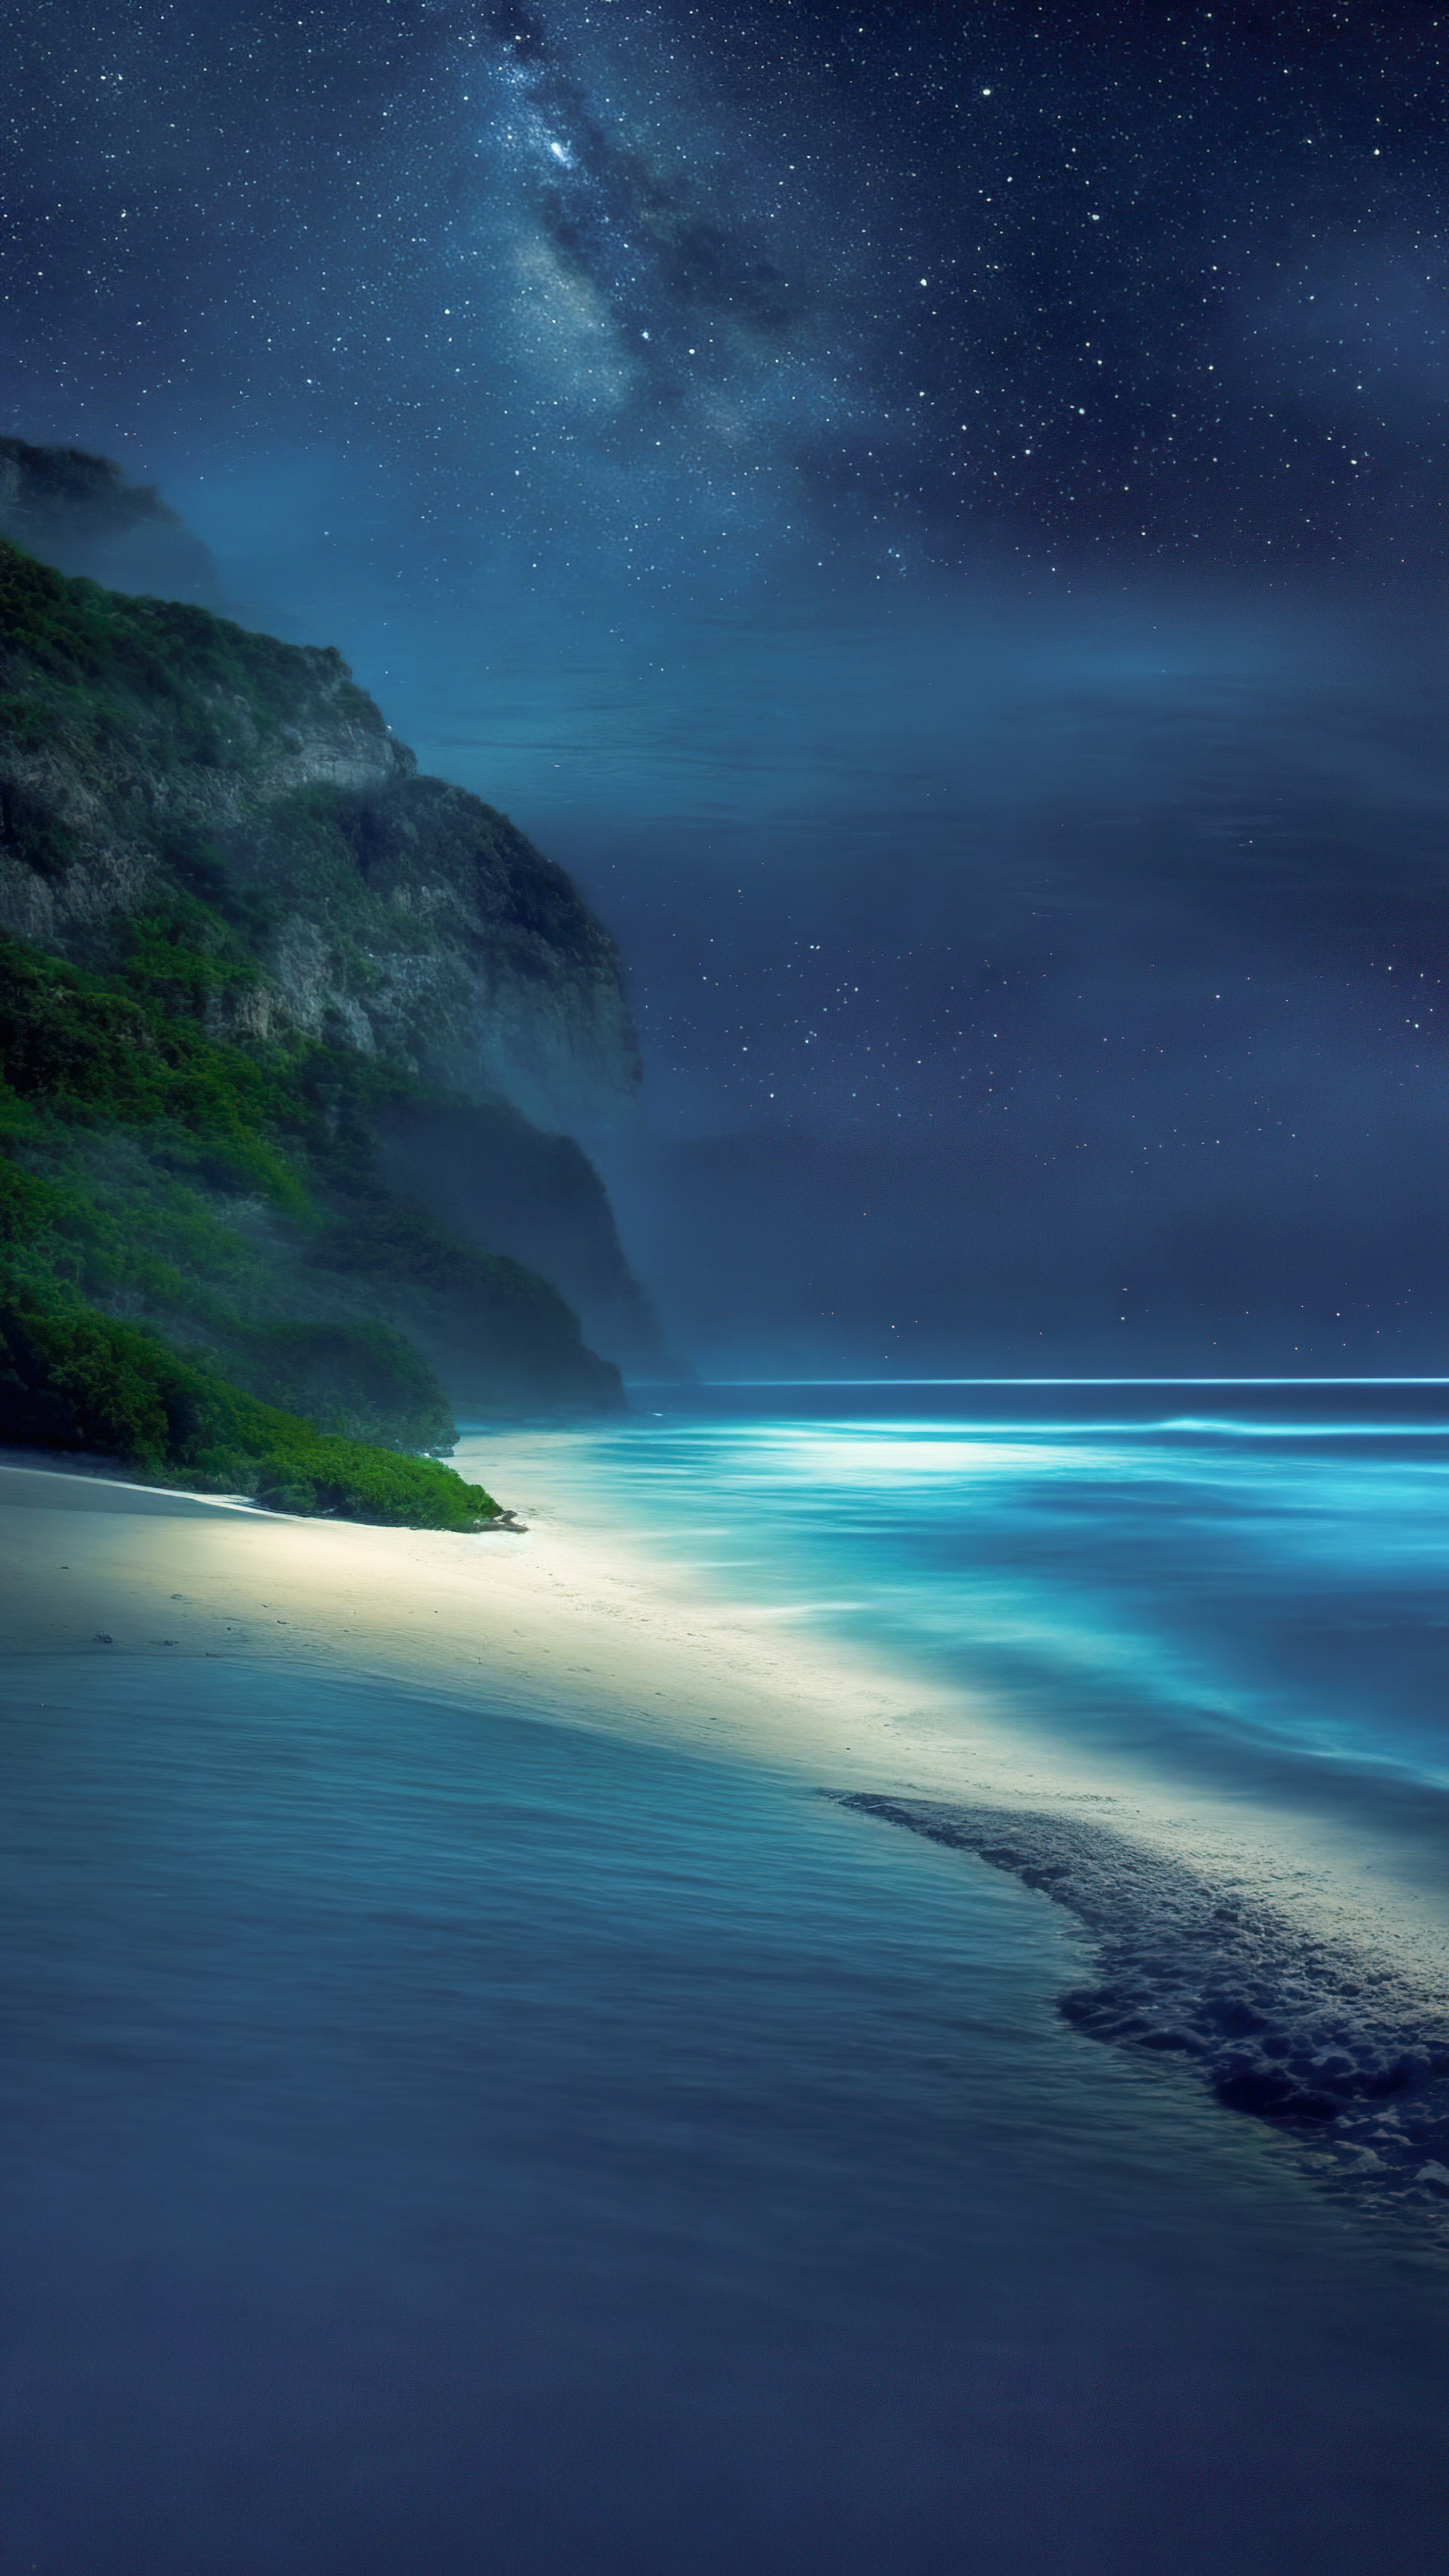 Transformez l'écran de votre appareil avec notre fond d'écran de plage de beaux paysages, représentant une plage tranquille la nuit, avec les vagues qui caressent doucement le rivage et une voûte d'étoiles au-dessus. 